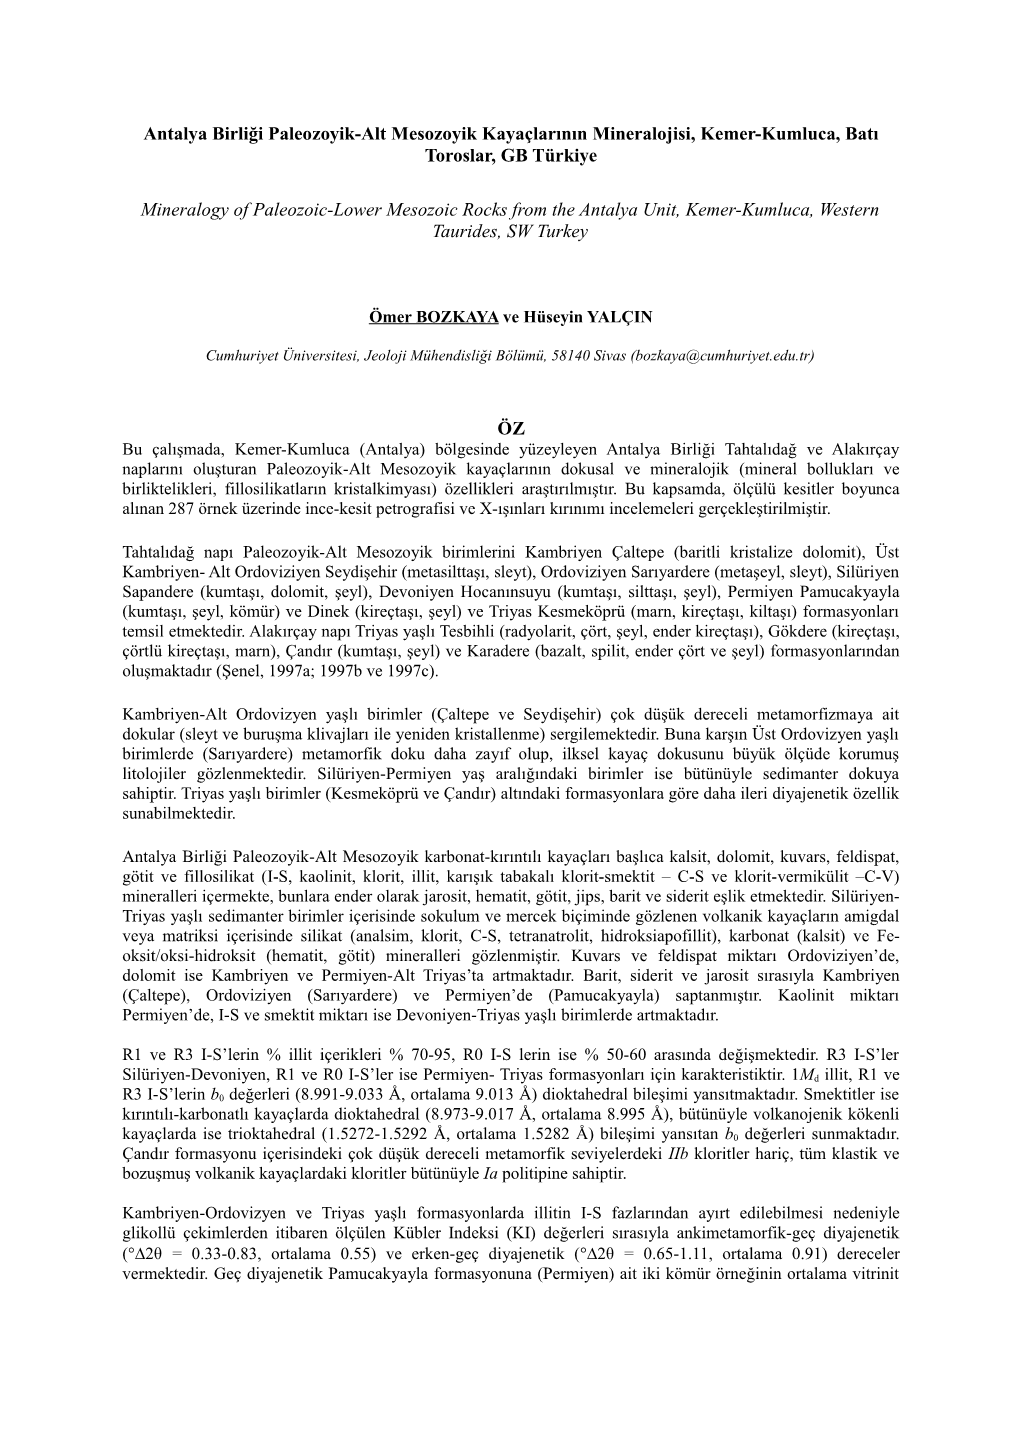 Antalya Birliği Paleozoyik-Alt Mesozoyik Kayaçlarının Mineralojisi, Kemer-Kumluca, Batı Toroslar, GB Türkiye